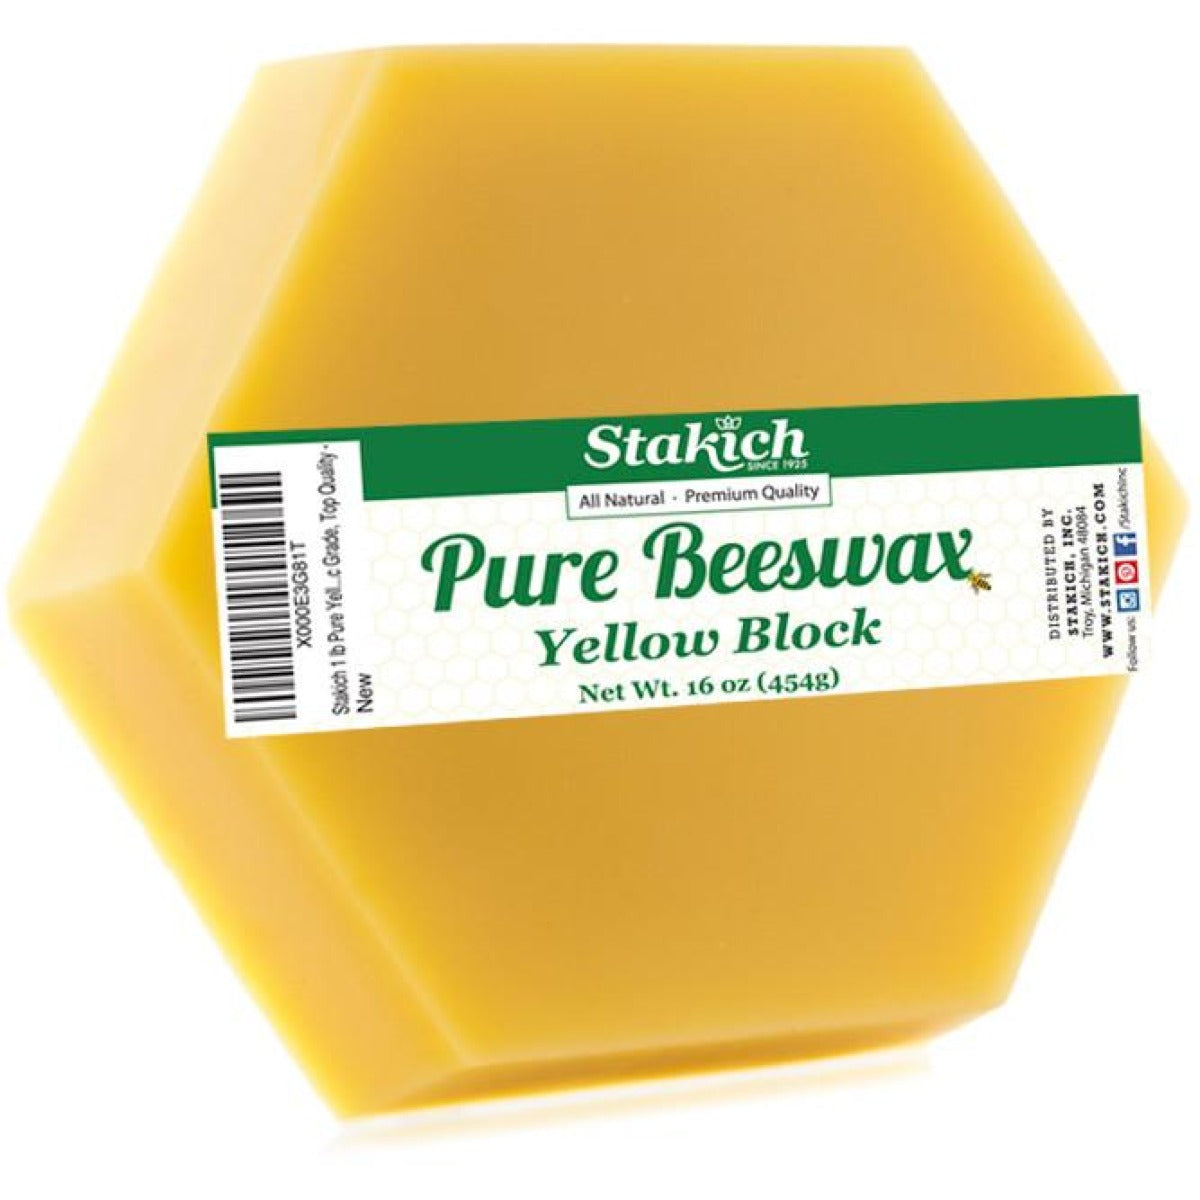 Yellow Beeswax (Cosmetic) Blocks - Stakich